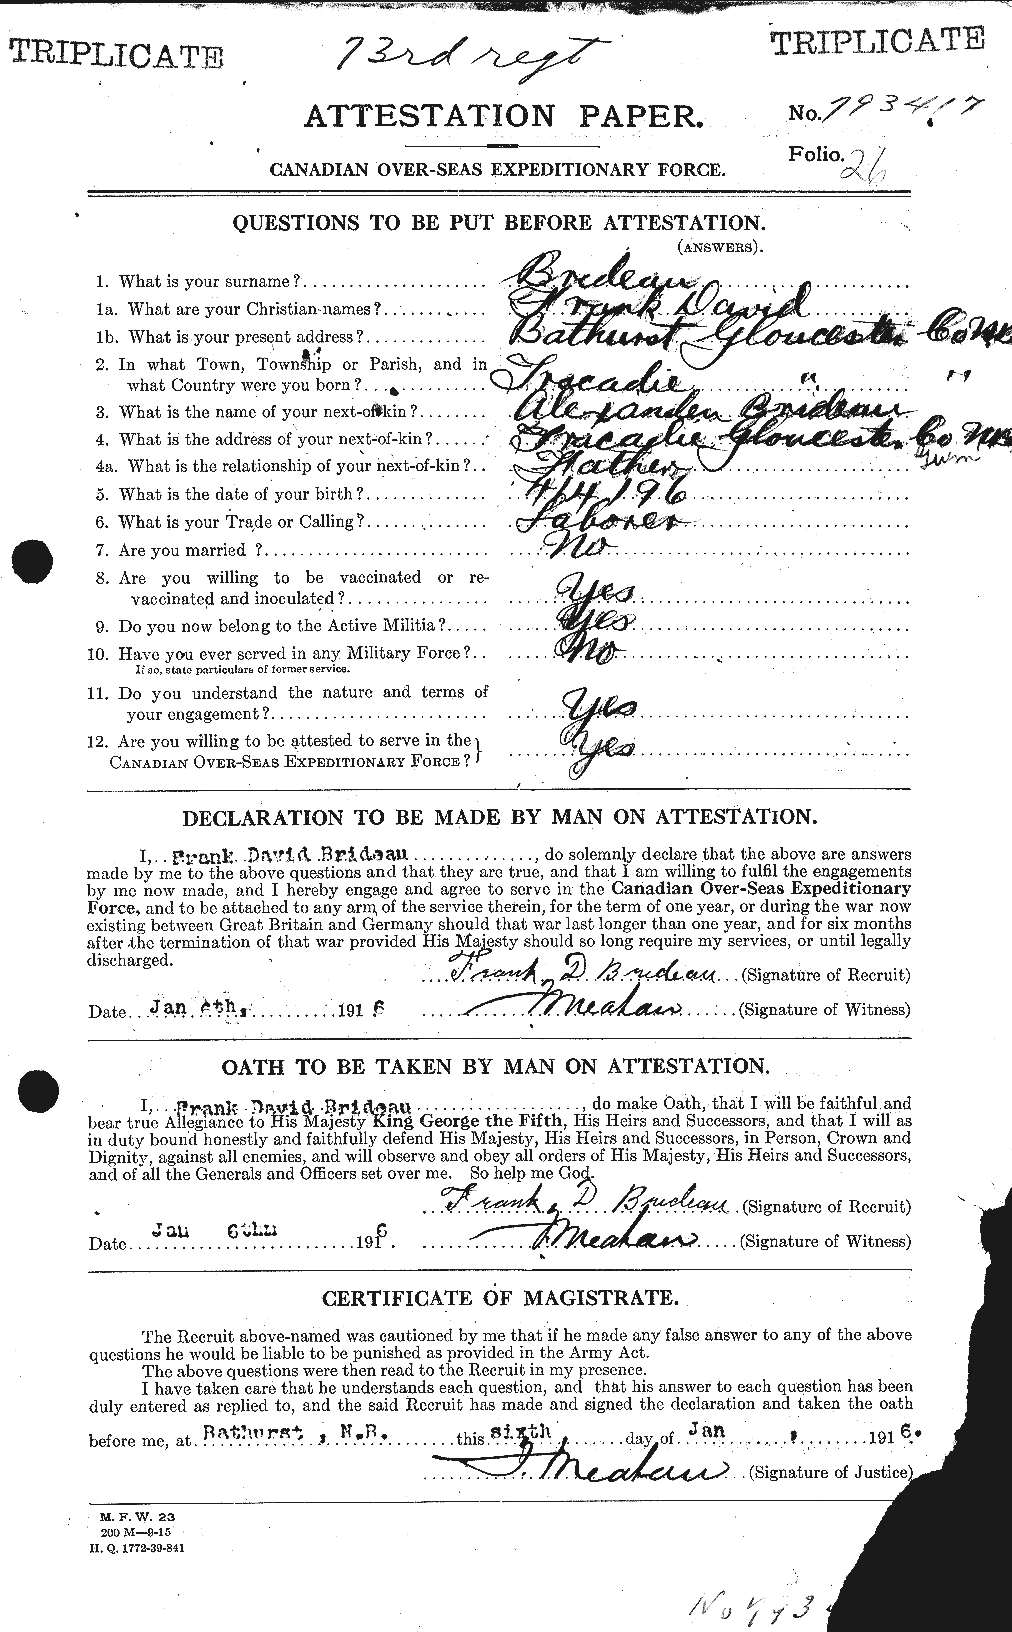 Dossiers du Personnel de la Première Guerre mondiale - CEC 261259a